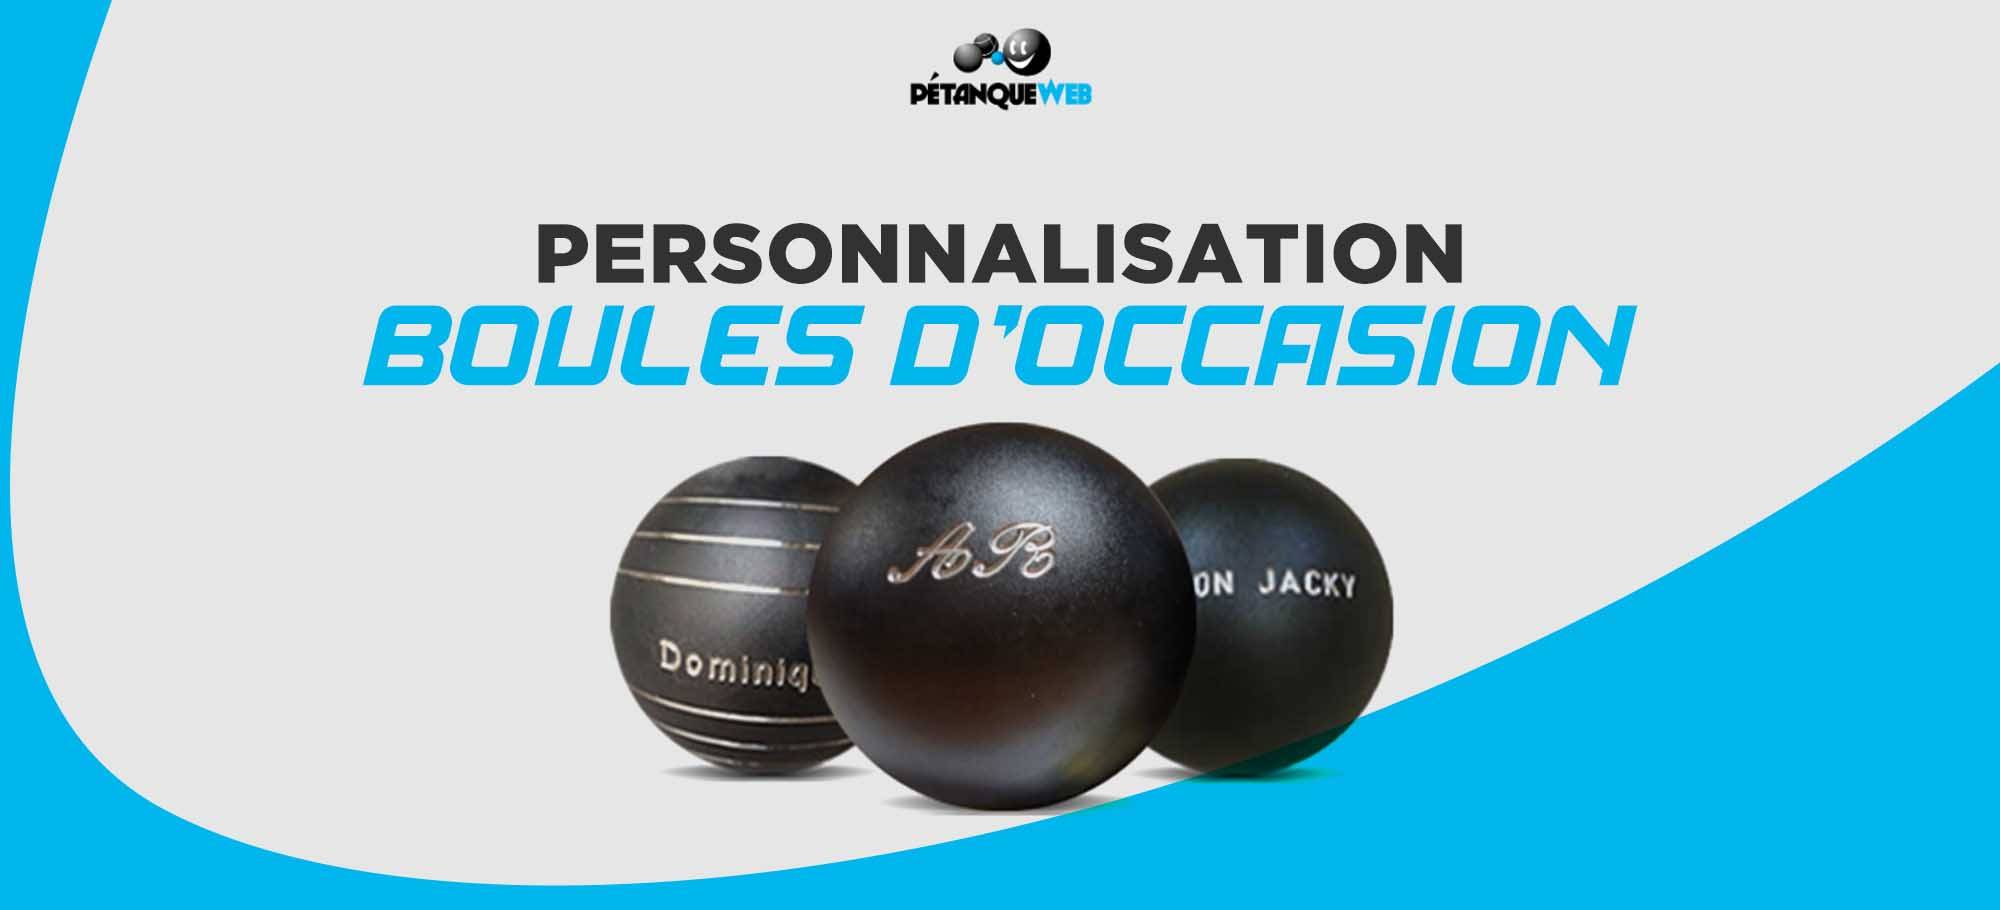 You are currently viewing Le nouveau service de personnalisation de boules d’occasion